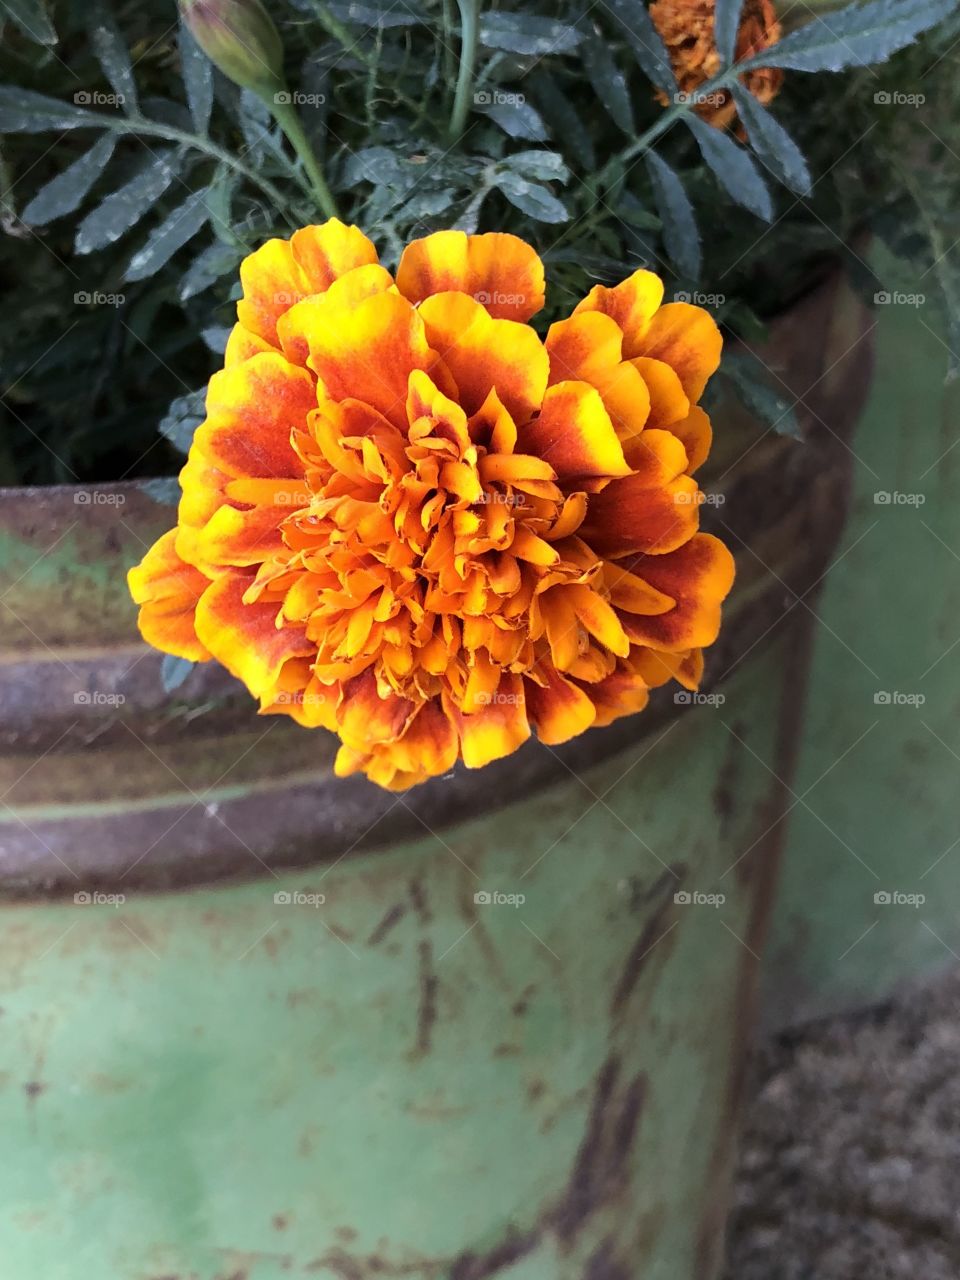 Rustic rural flower